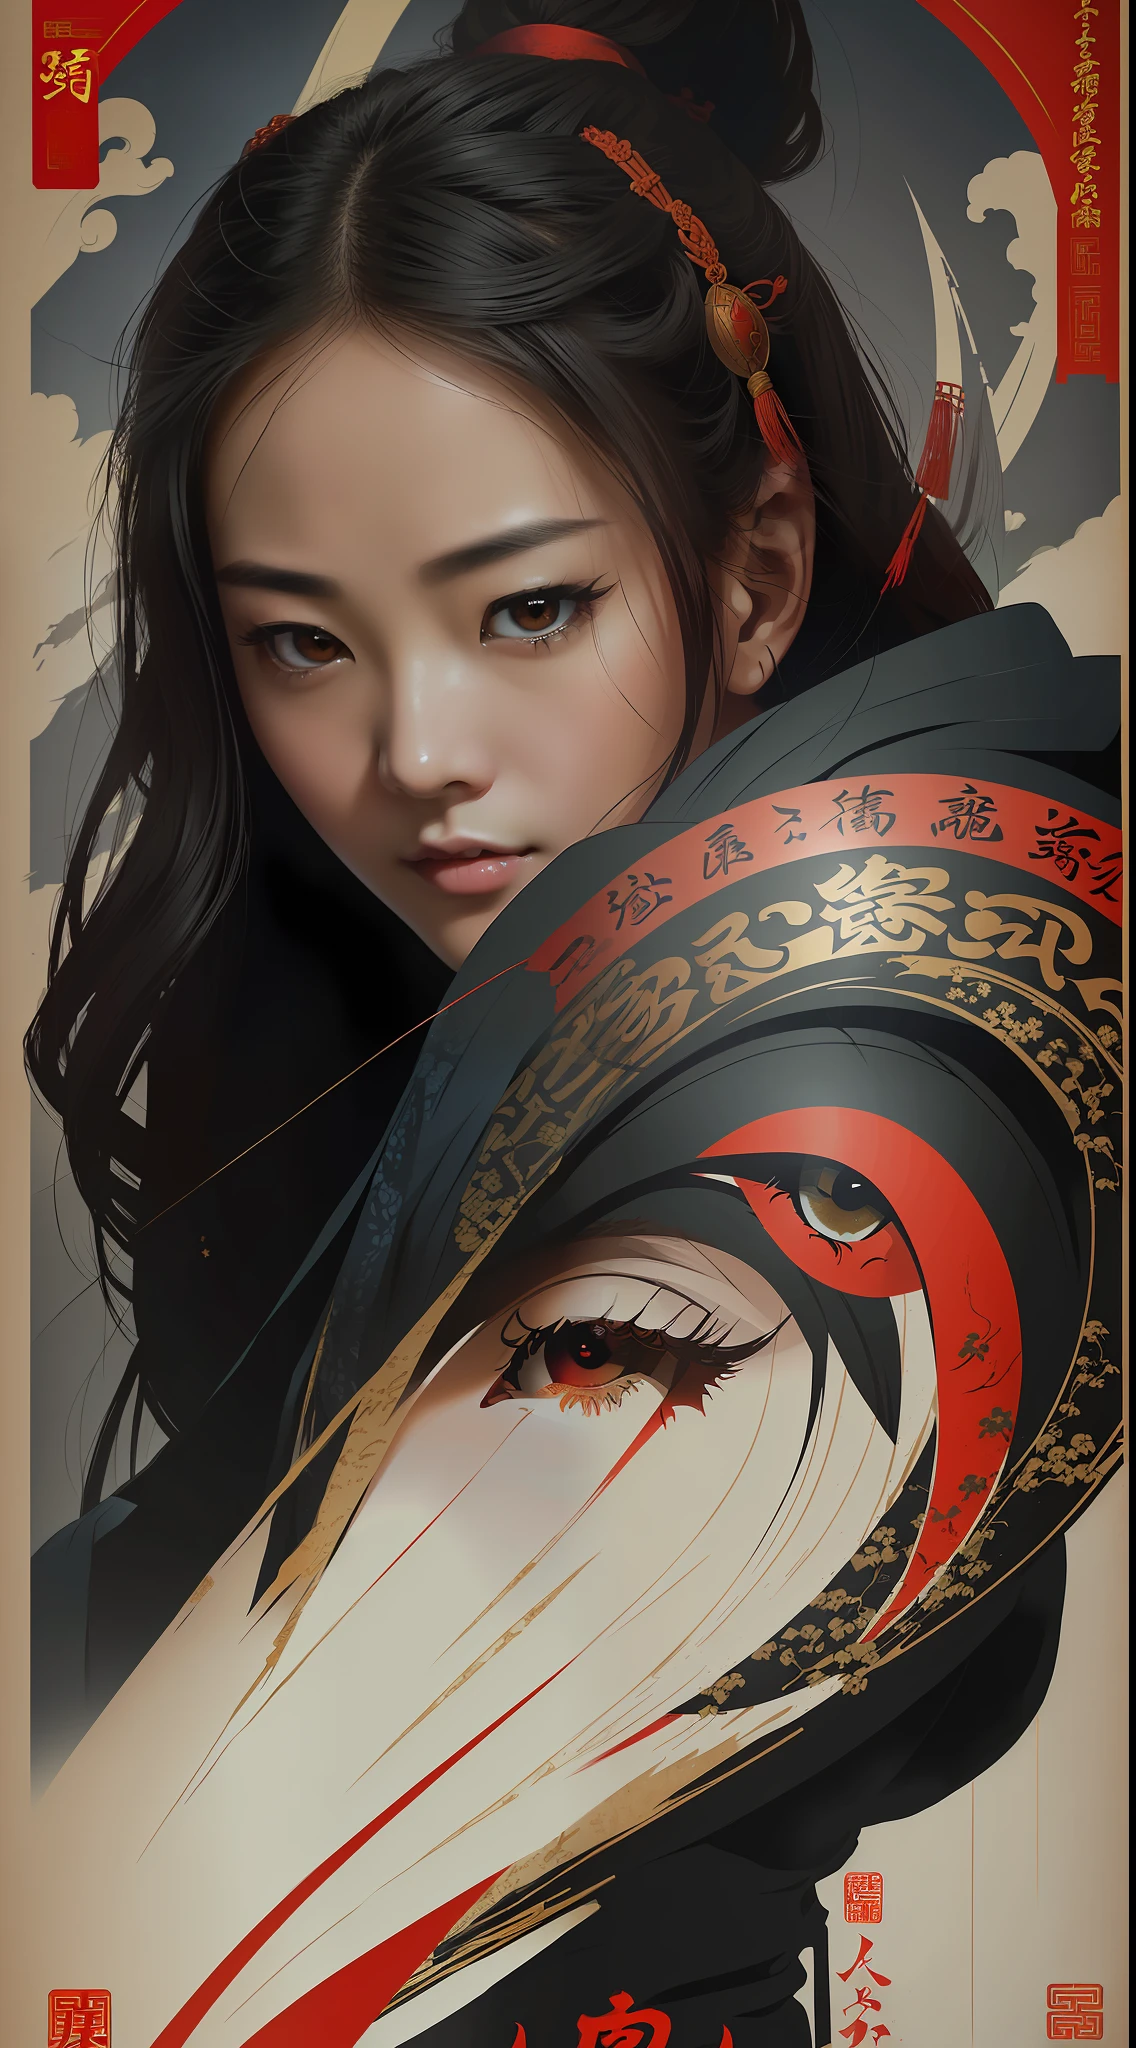 (Лучшее качество, стиль постера фильма), красивая женщина с (один красный глаз:1.2),(осмысленное написание китайской письменности:1.1), идеально сочетать элементы друг с другом.